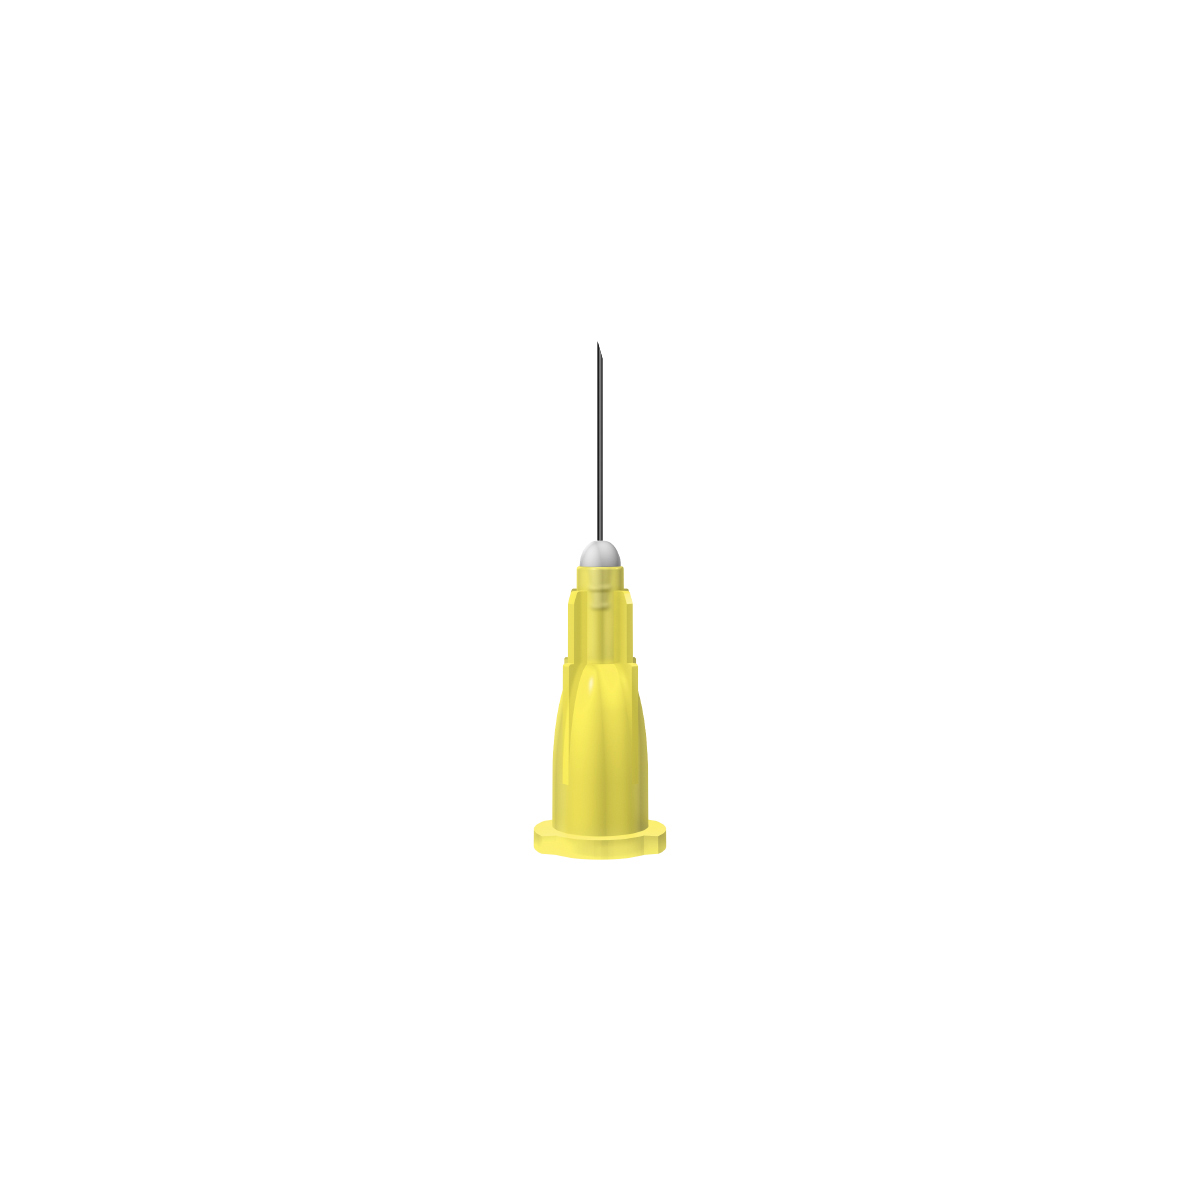 Unisharp: Yellow 30G 13mm (½ inch) needle